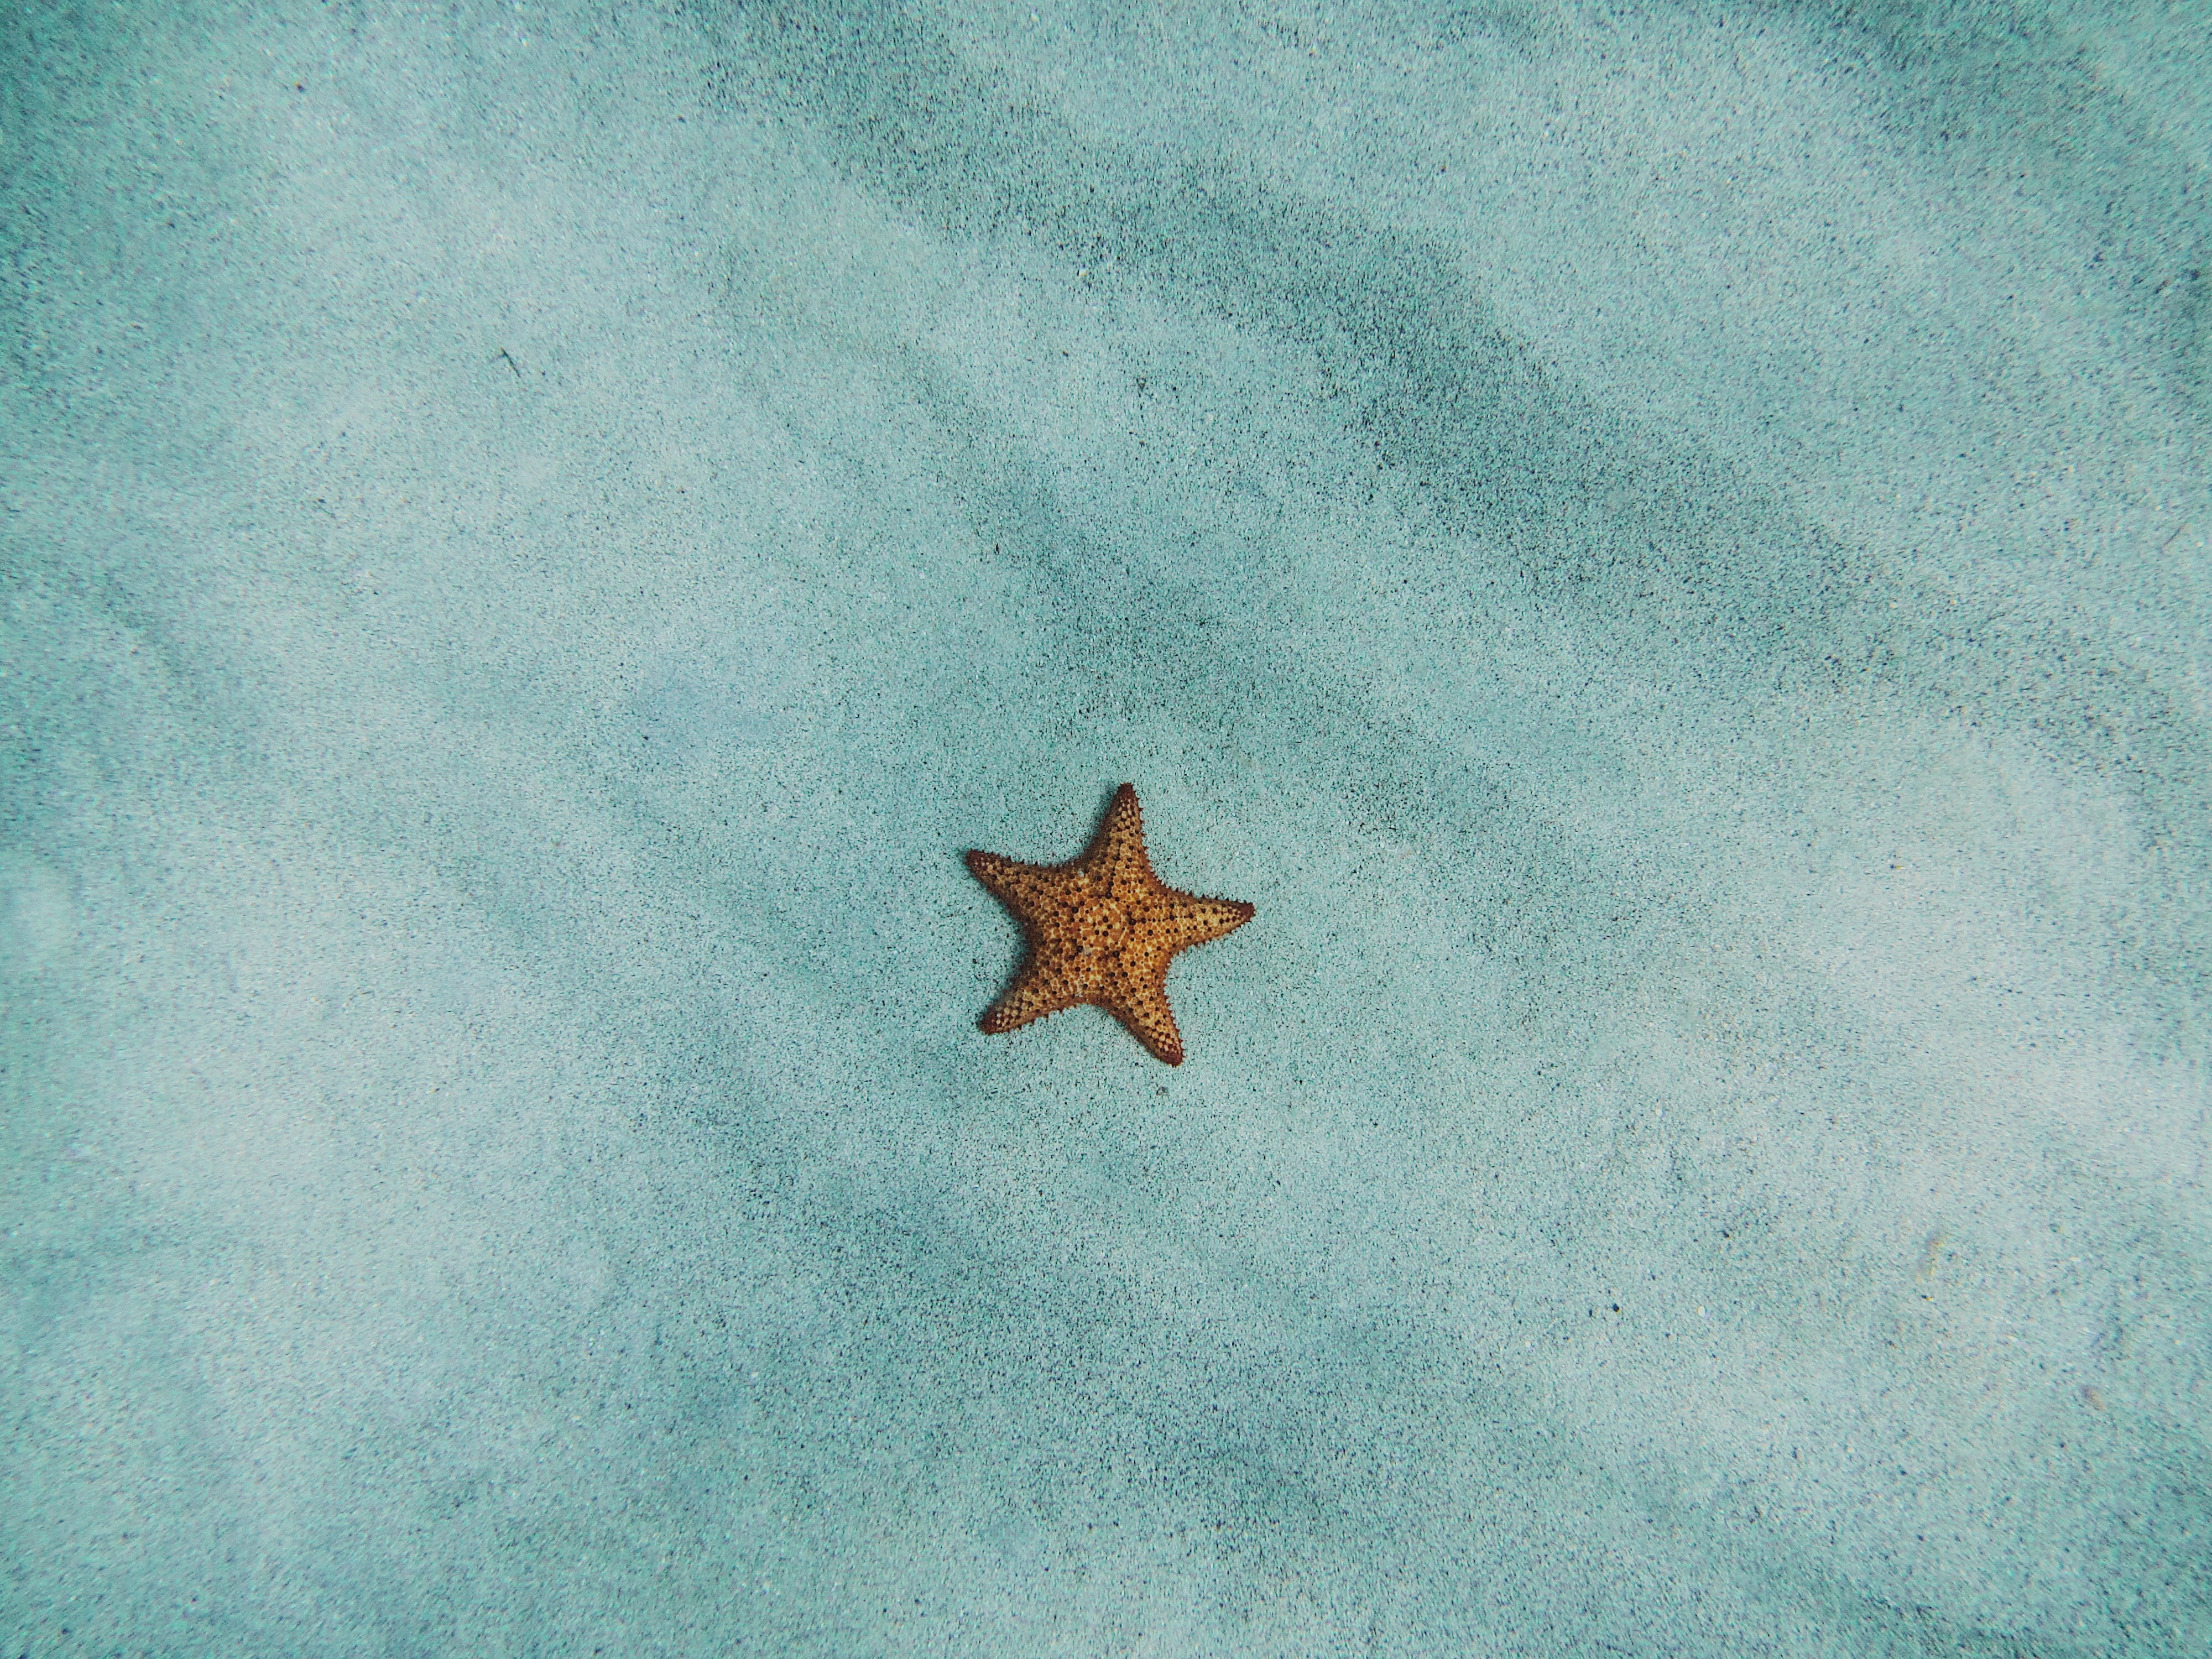 General 4000x3000 starfish sand water nature Australia